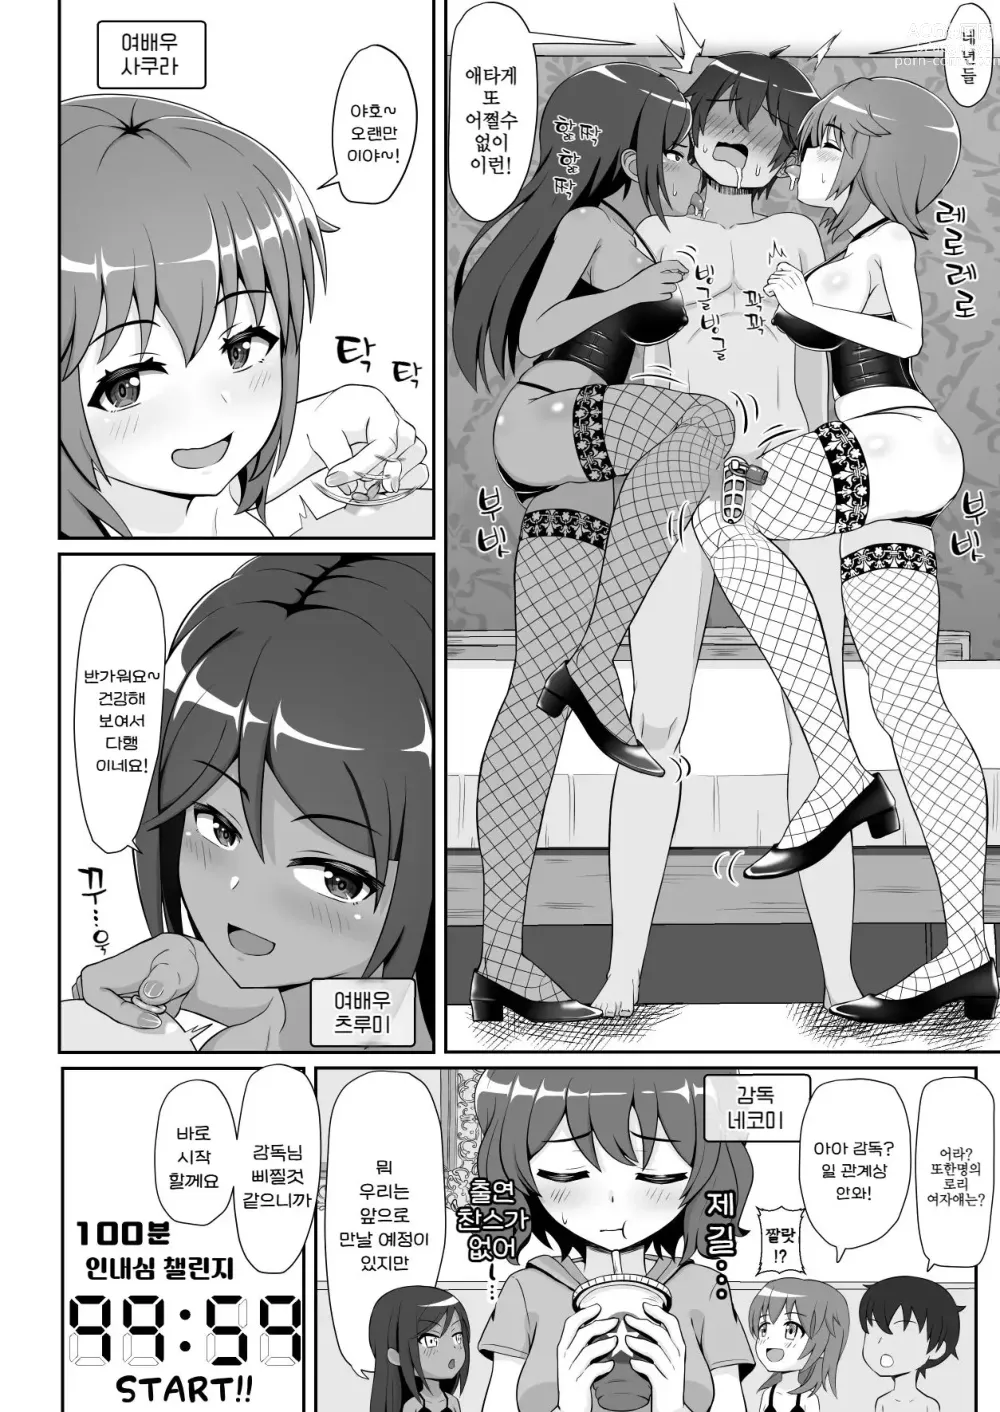 Page 3 of doujinshi 굉장한 테크닉을 갖춘 여배우들에게 범해져서 100분 내구성으로 그녀를 구하는 기획에 도전해 보았다!